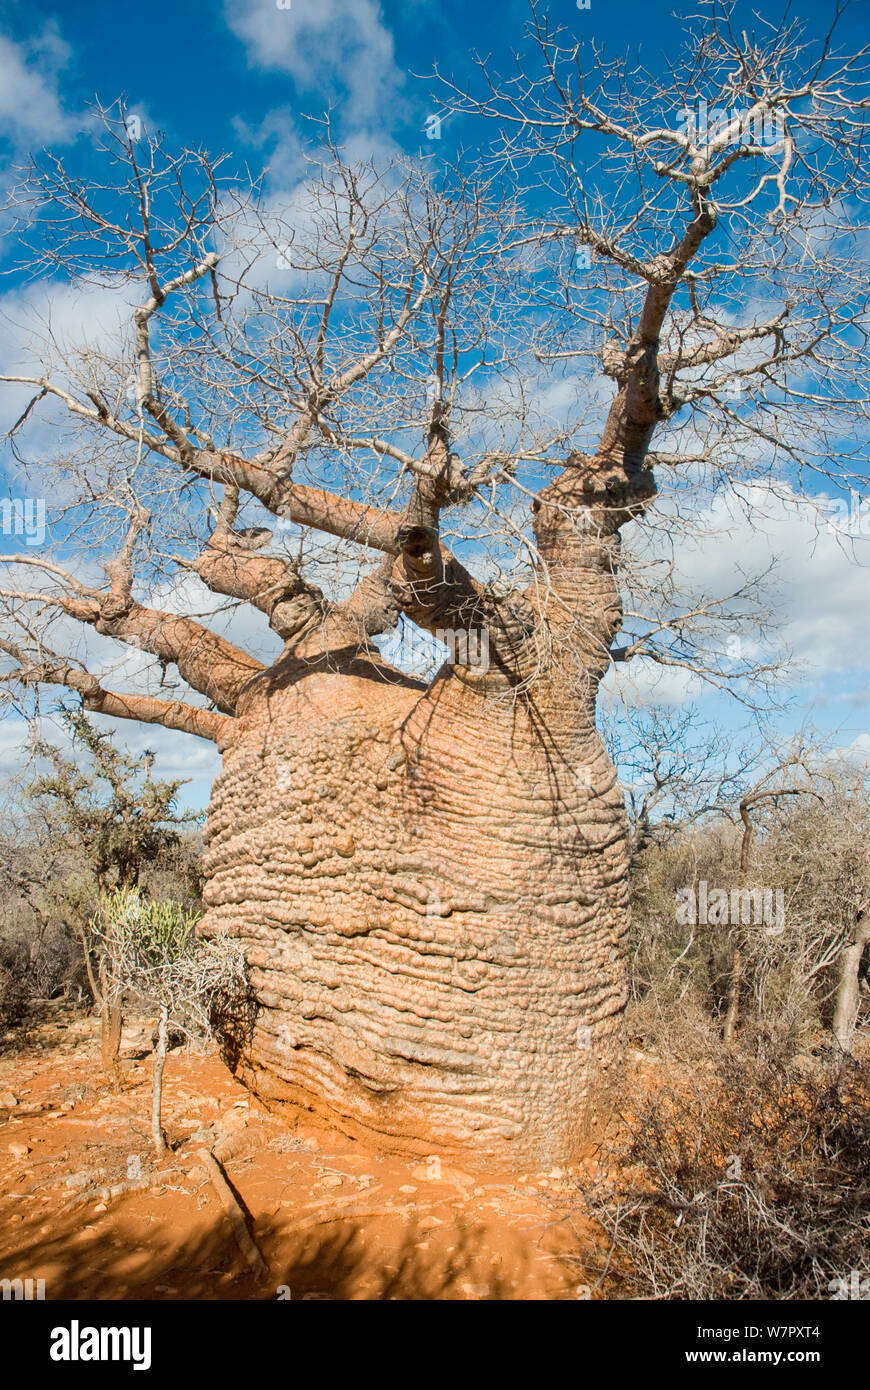 Baobab (Adansonia rubrostipa) dans le Parc National de Tsimanampetsotsa, Madagascar. Photographie prise sur l'emplacement pour BBC 'Wild Madagascar' Série, août 2009. Banque D'Images